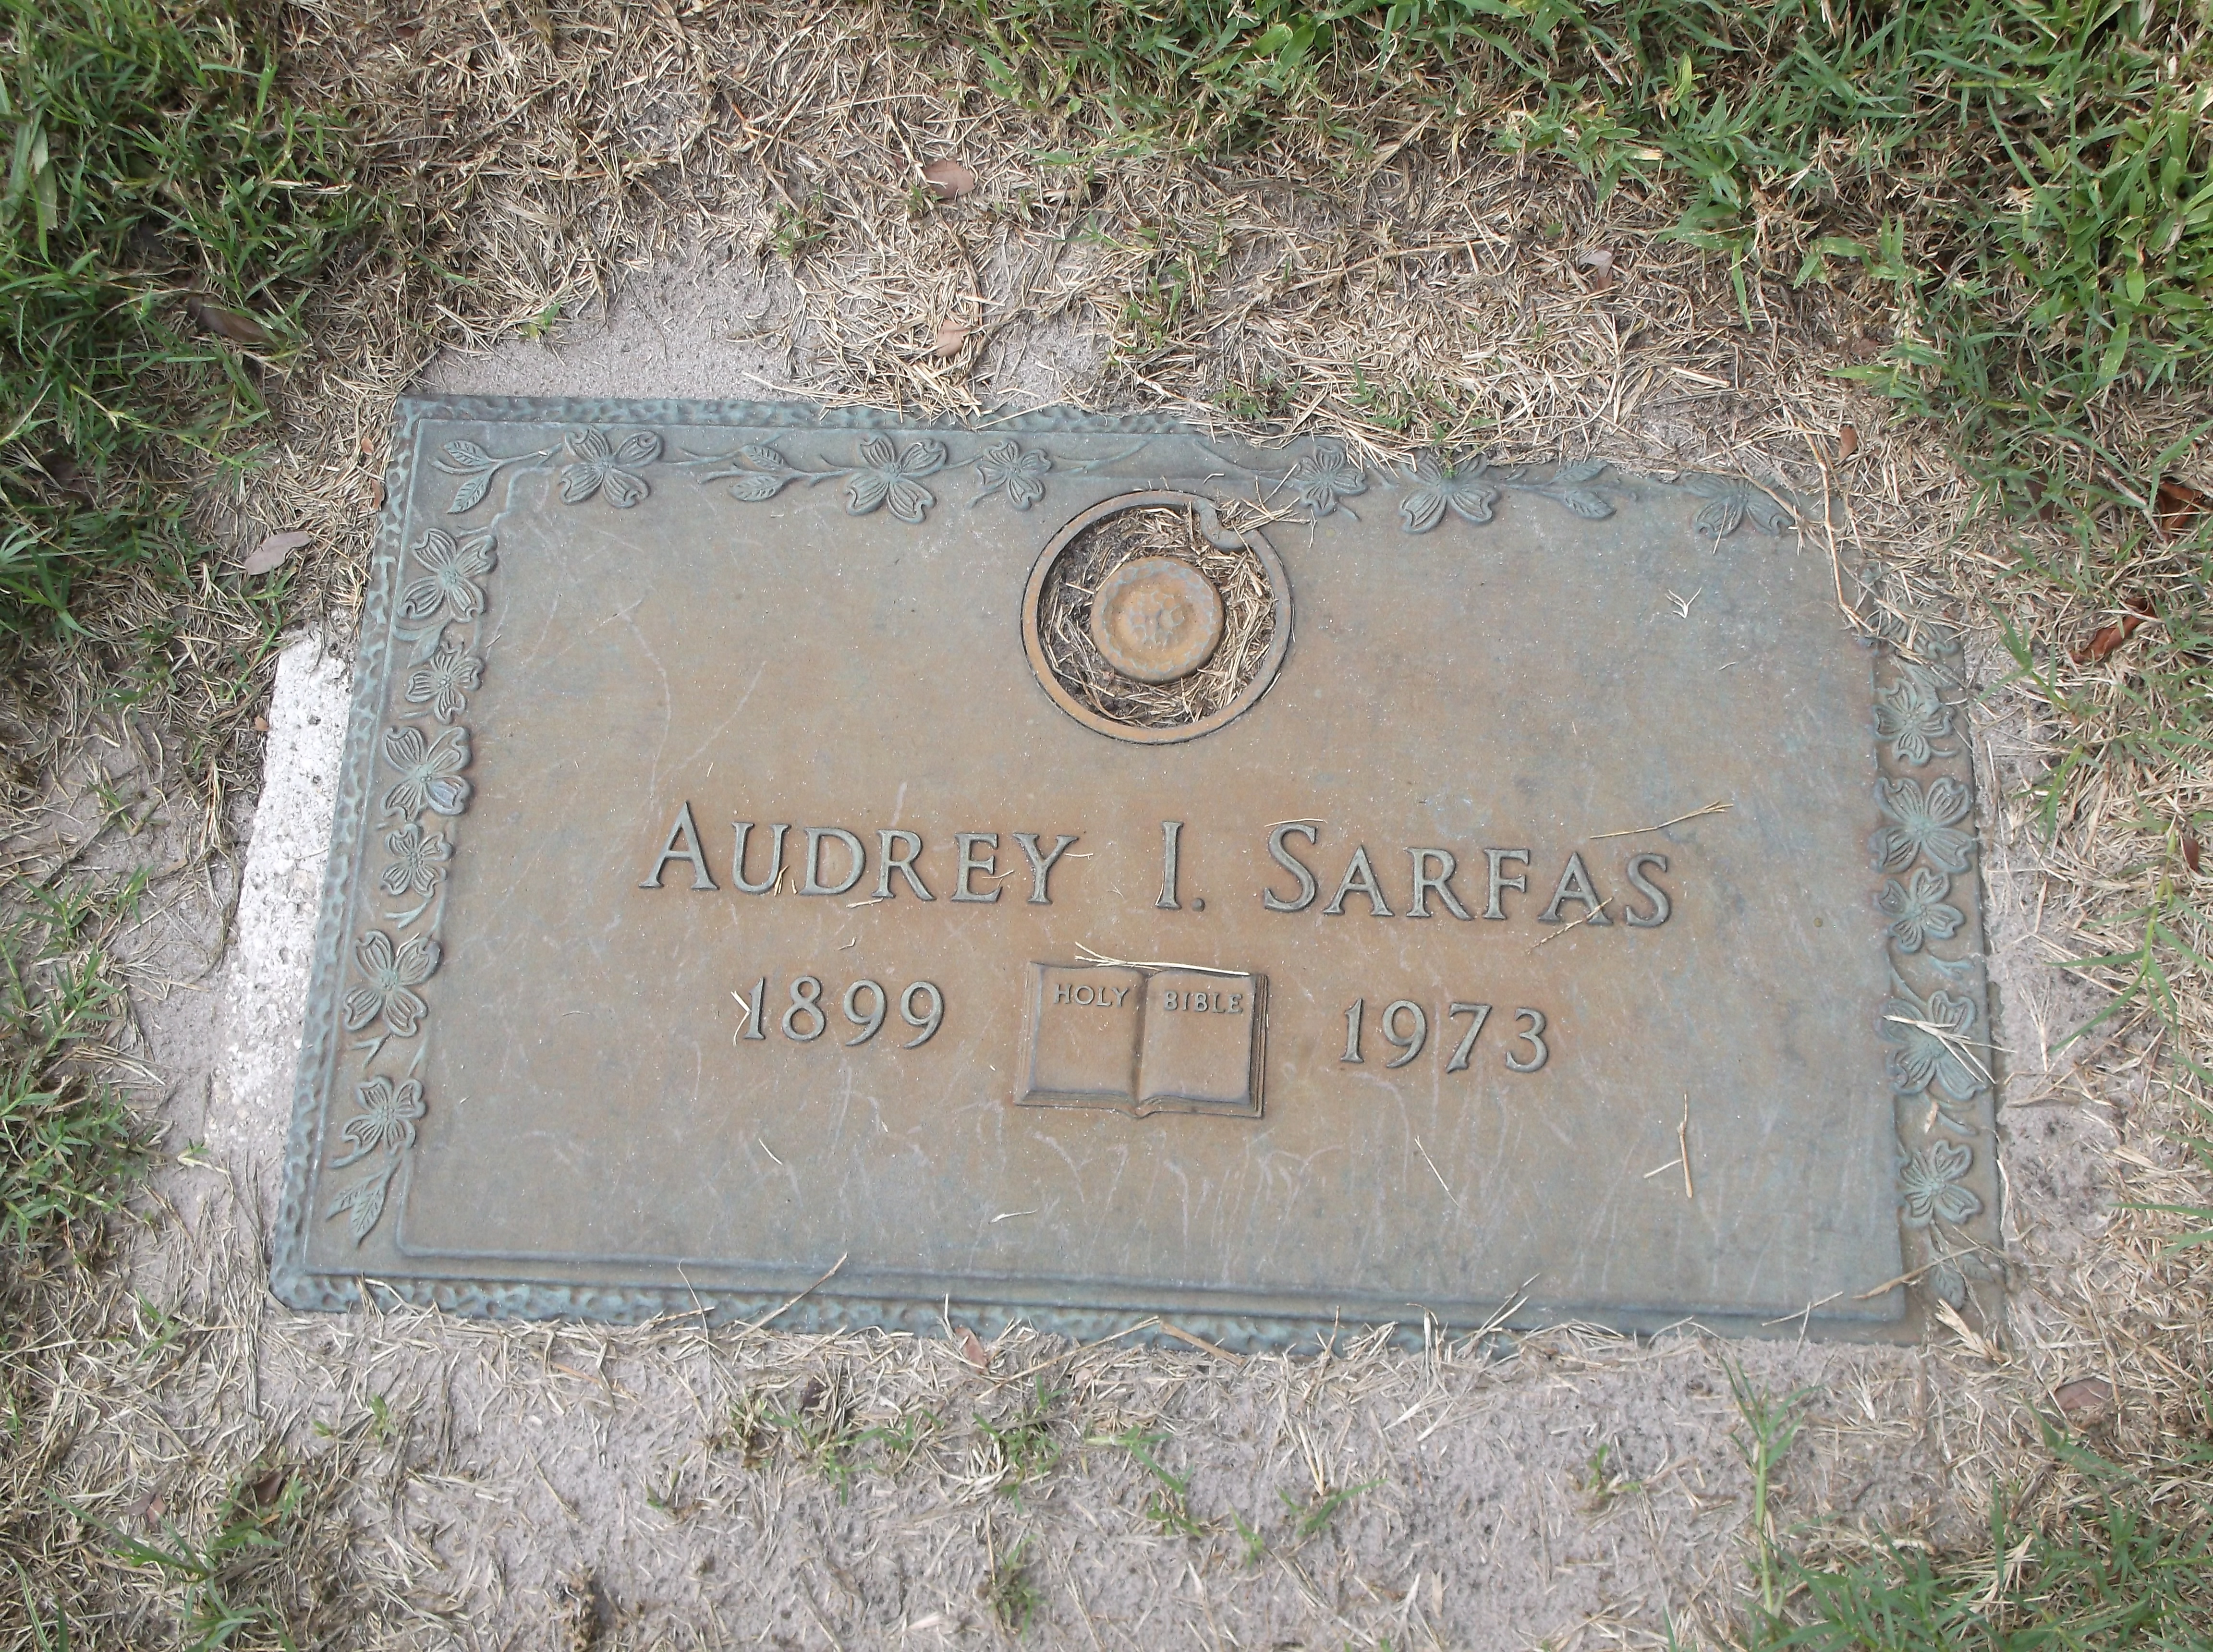 Audrey I Sarfas